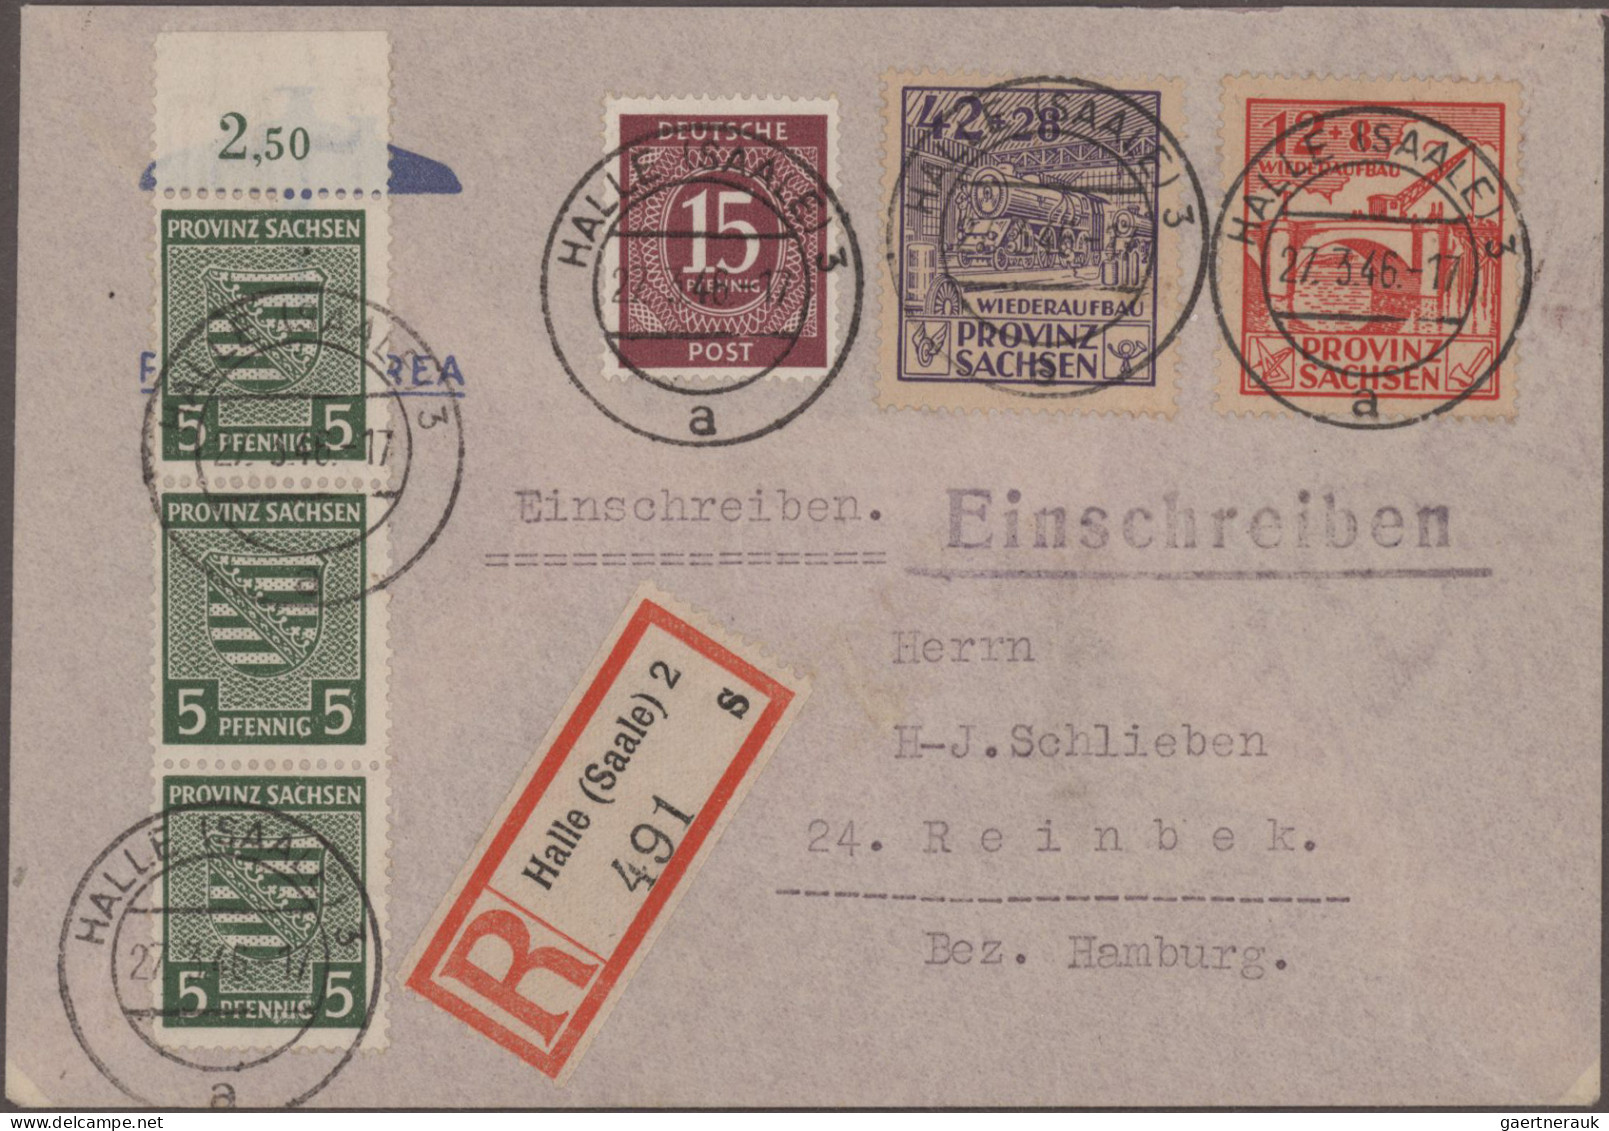 Deutschland ab 1945 - Gebühr Bezahlt: 1945/49: Aus Essen erhielten wir eine umfa